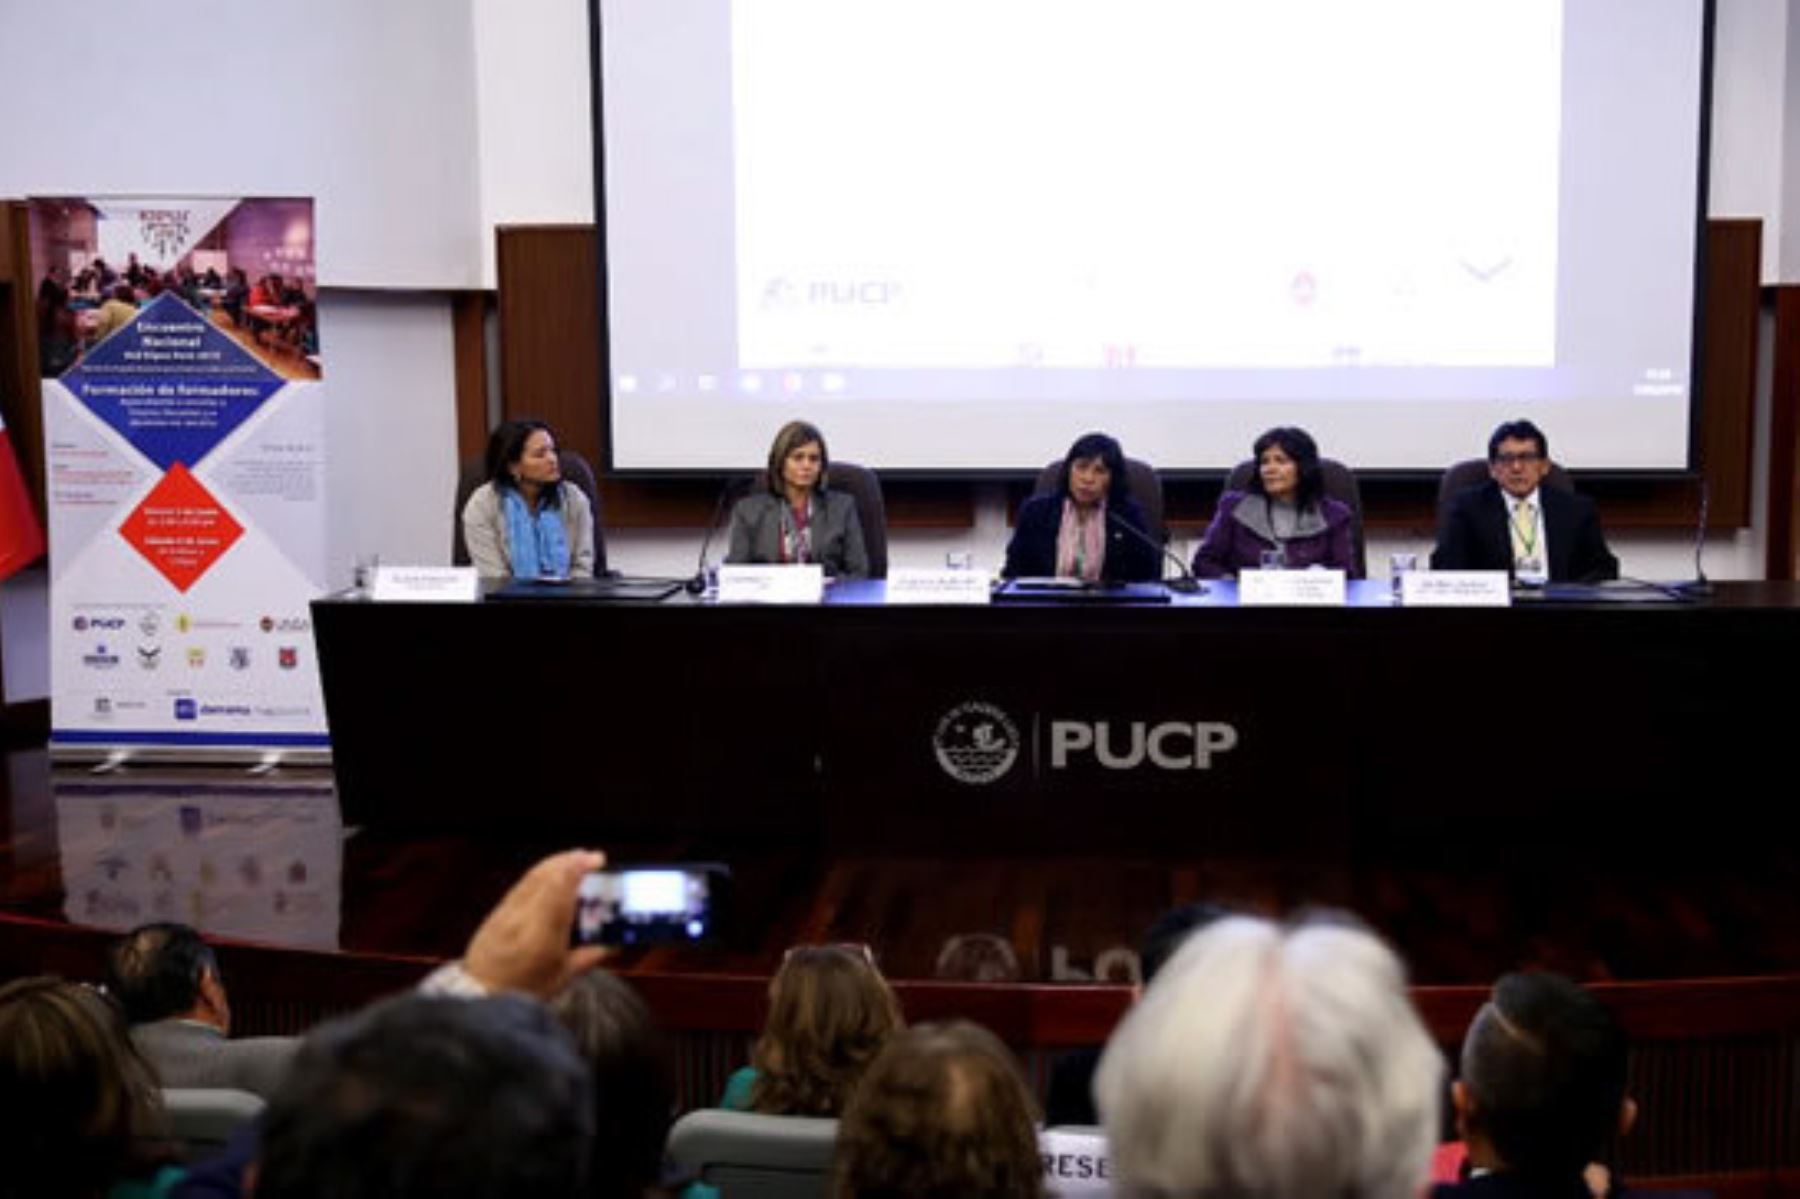 Viceministra de Gestión Pedagógica, Patricia Andrade, inaugura el Encuentro Nacional de la Red Kipus Perú 2019 que se realiza en Lima.